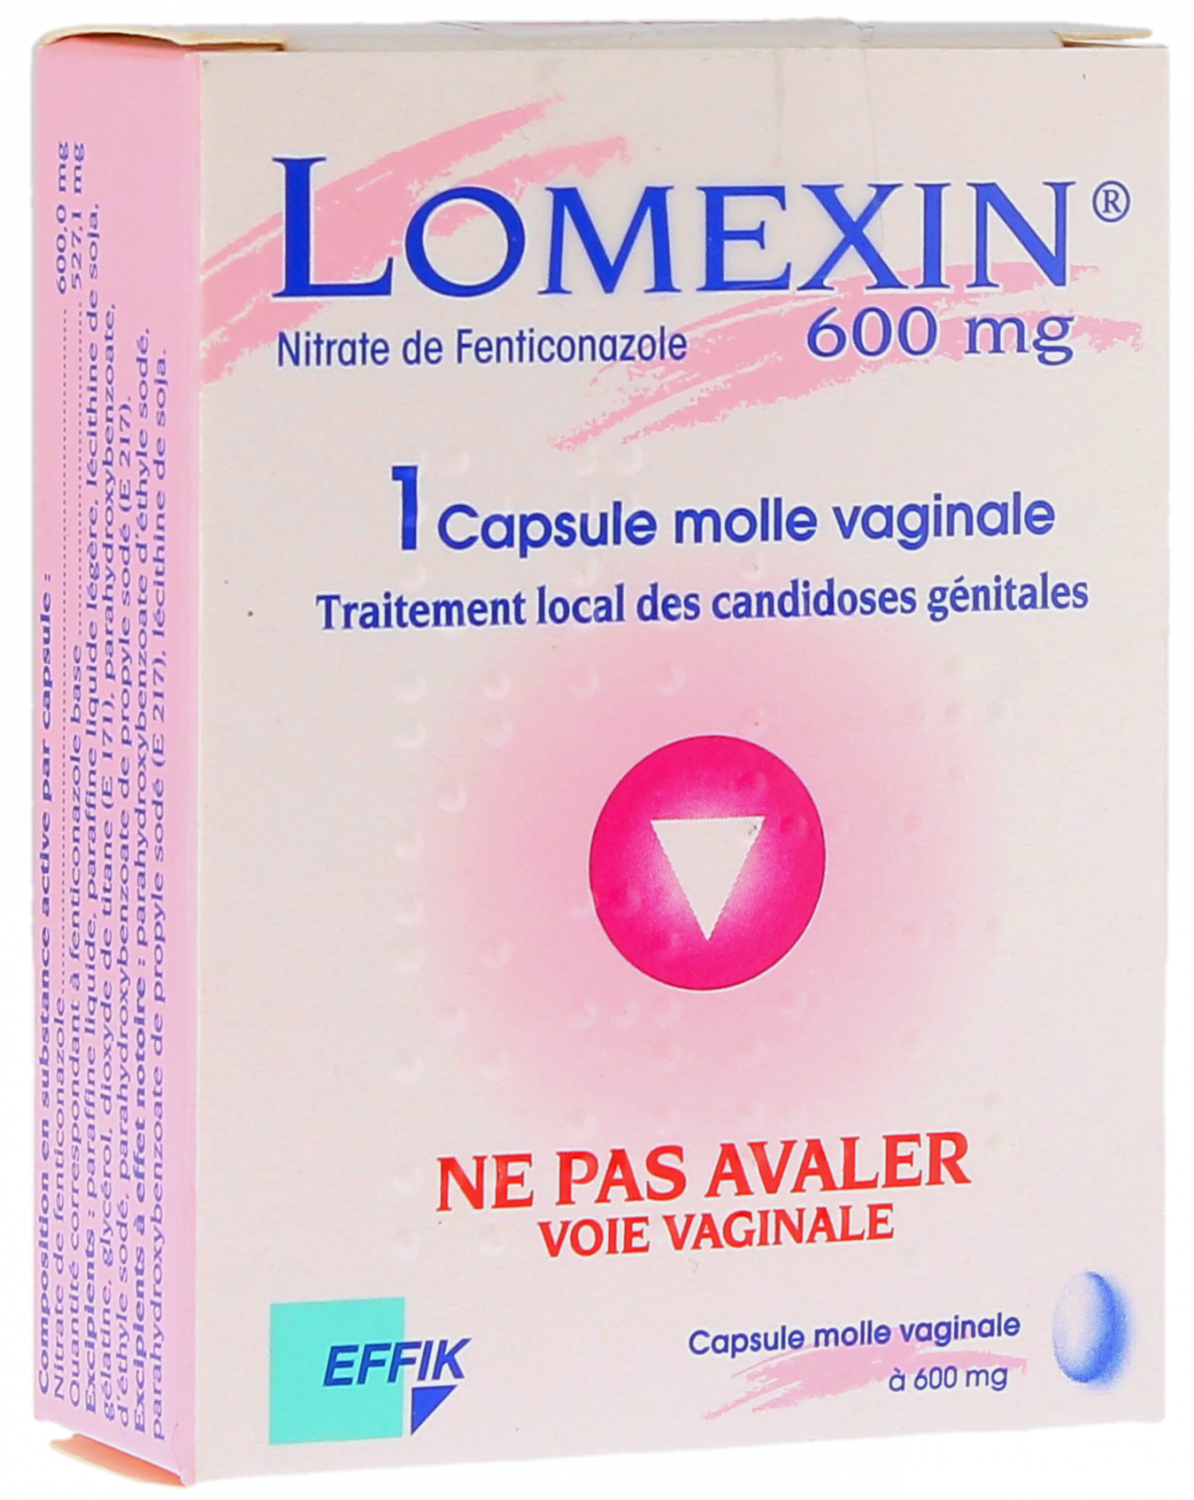 Lomexin 600mg capsule molle vaginale, boîte d'une capsule